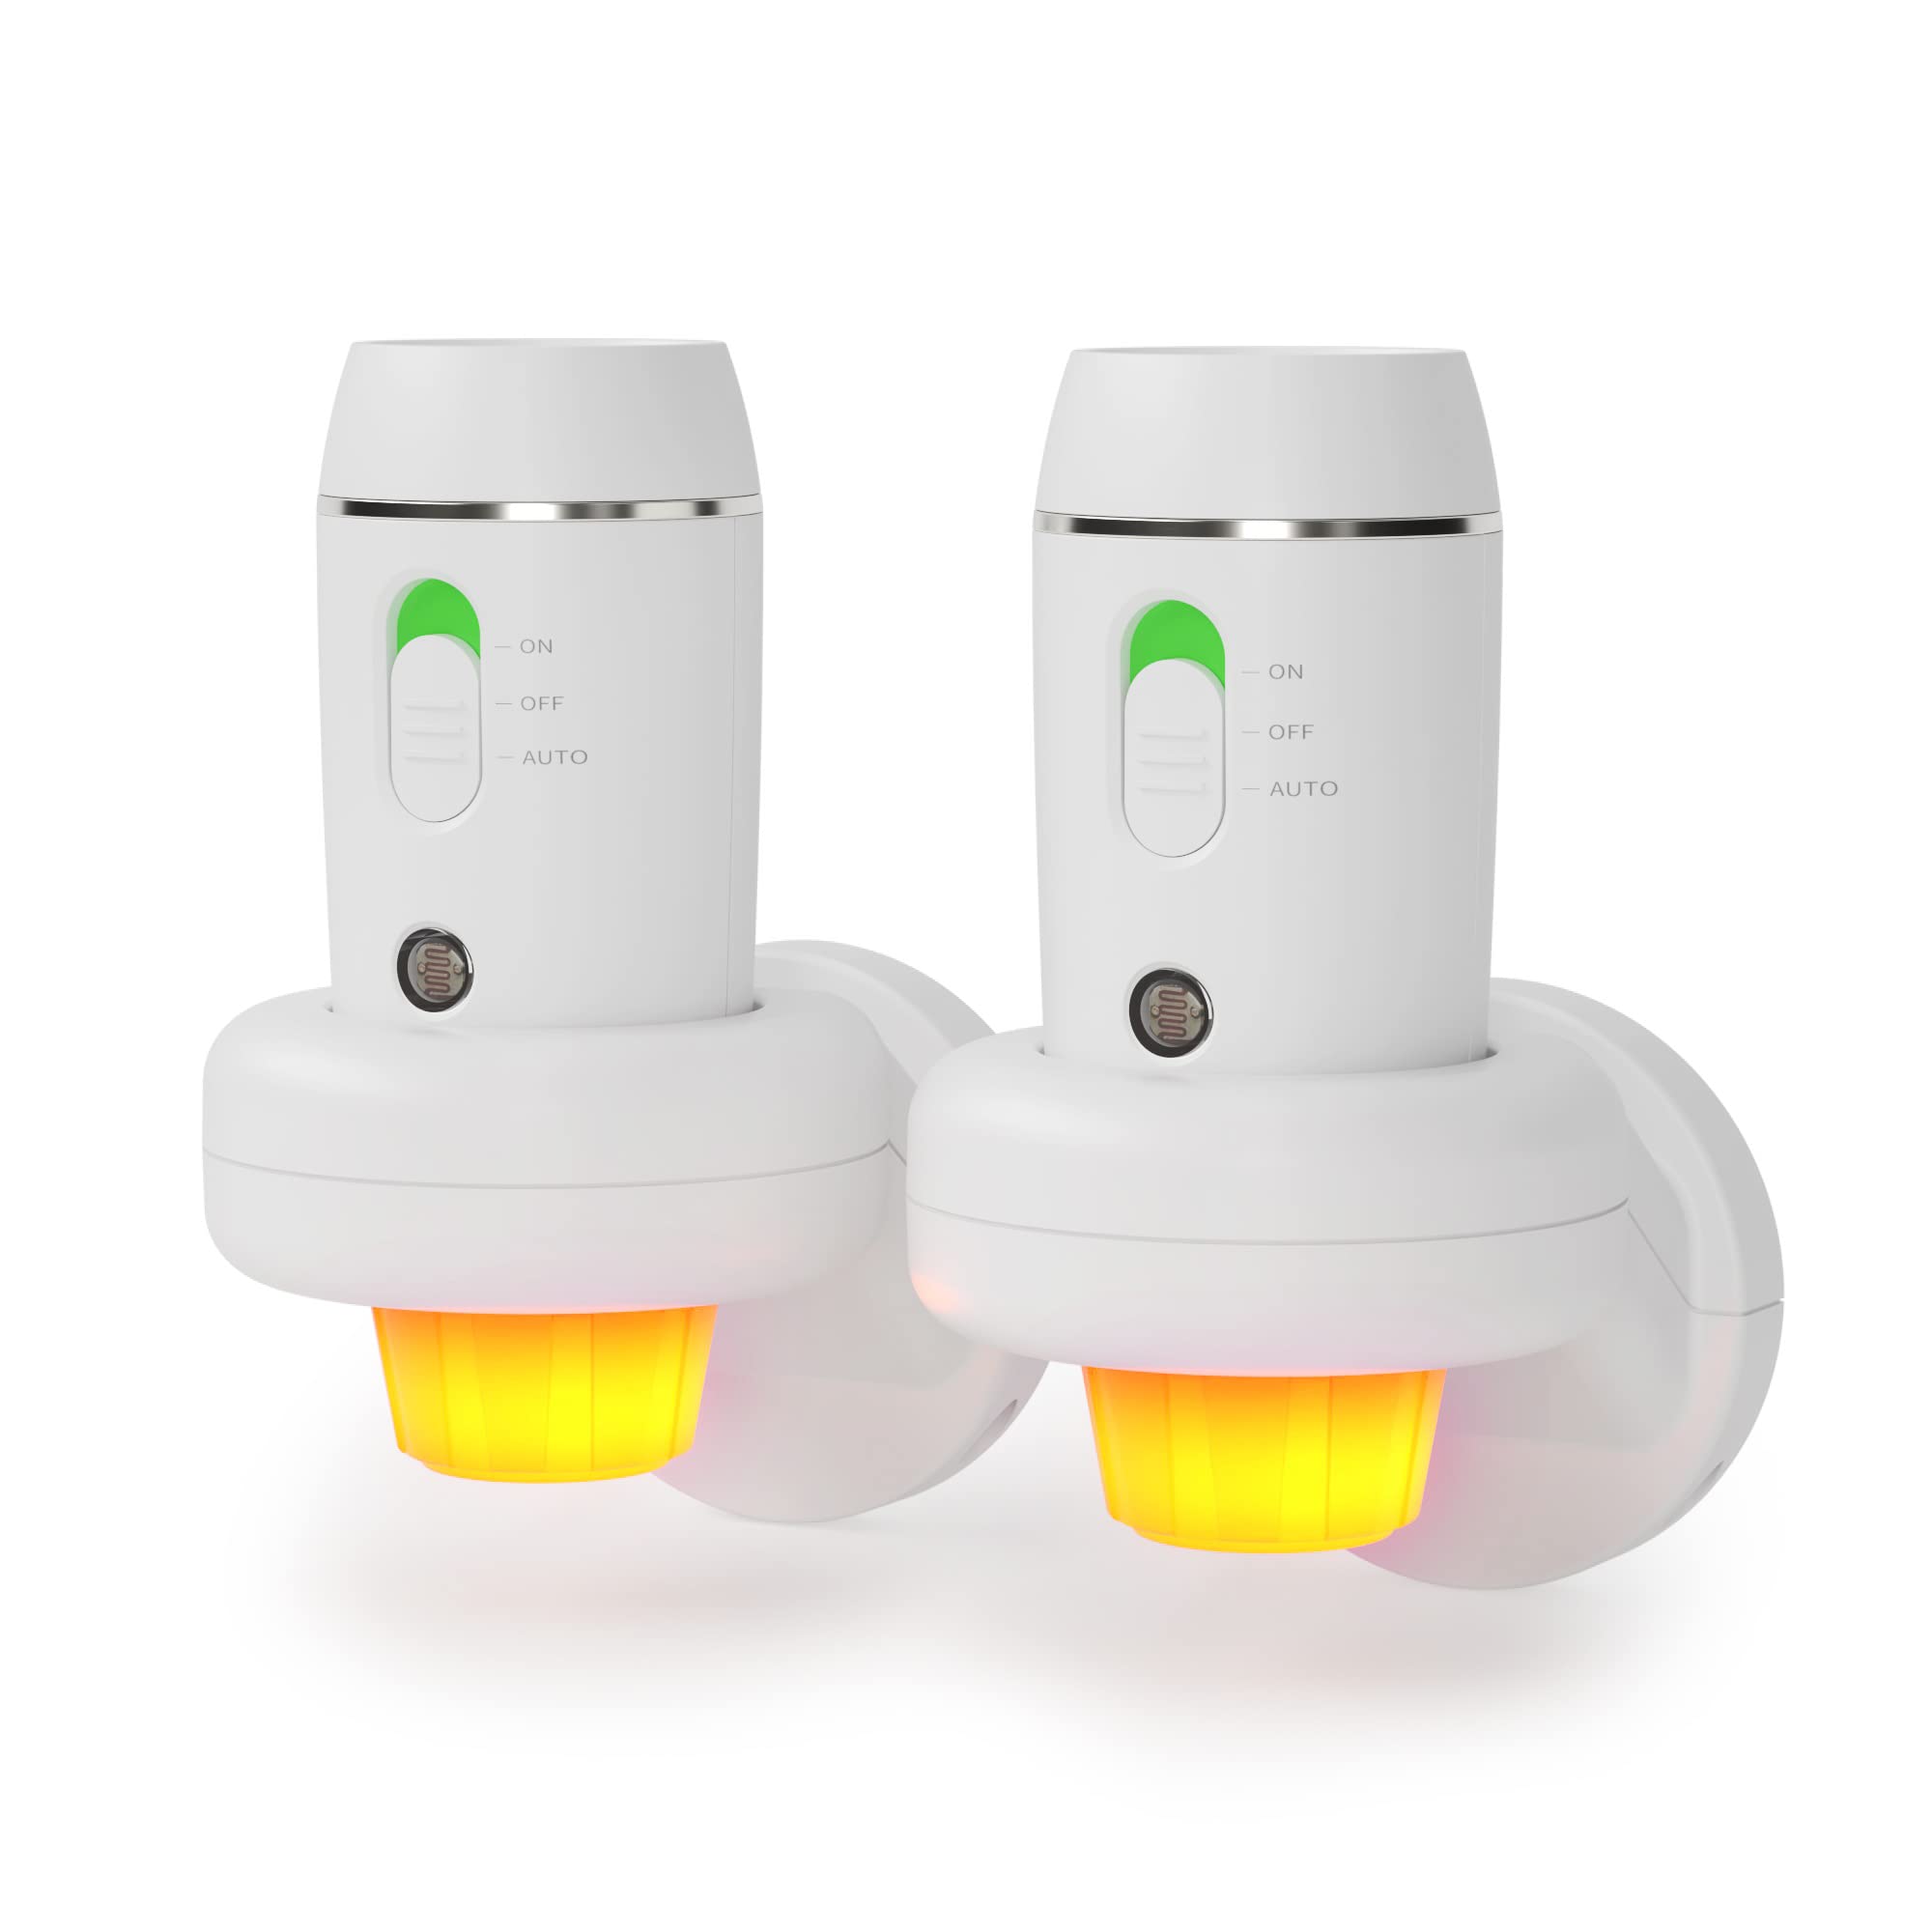 緊急LED懐中電灯、3-in-1充電式停電ライト、家庭用多機能ポータブル自動ハンドヘルドライト、緊急事態用照明センサー常夜灯、2パック